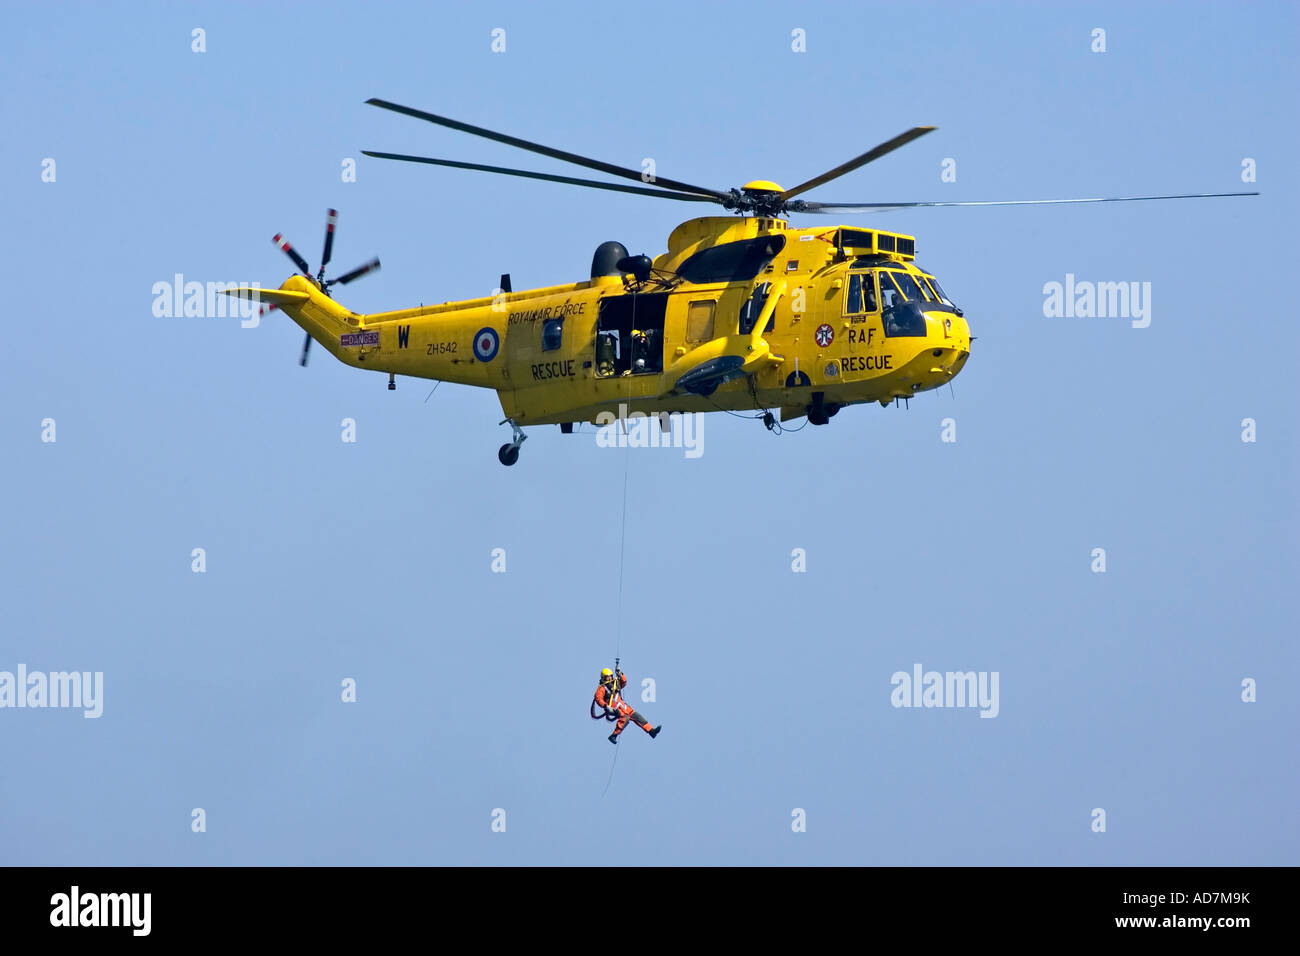 Un mare di RAF Re Salvataggio in elicottero di soccorso con winchman distribuito e andando verso il basso sul cavo del verricello Foto Stock